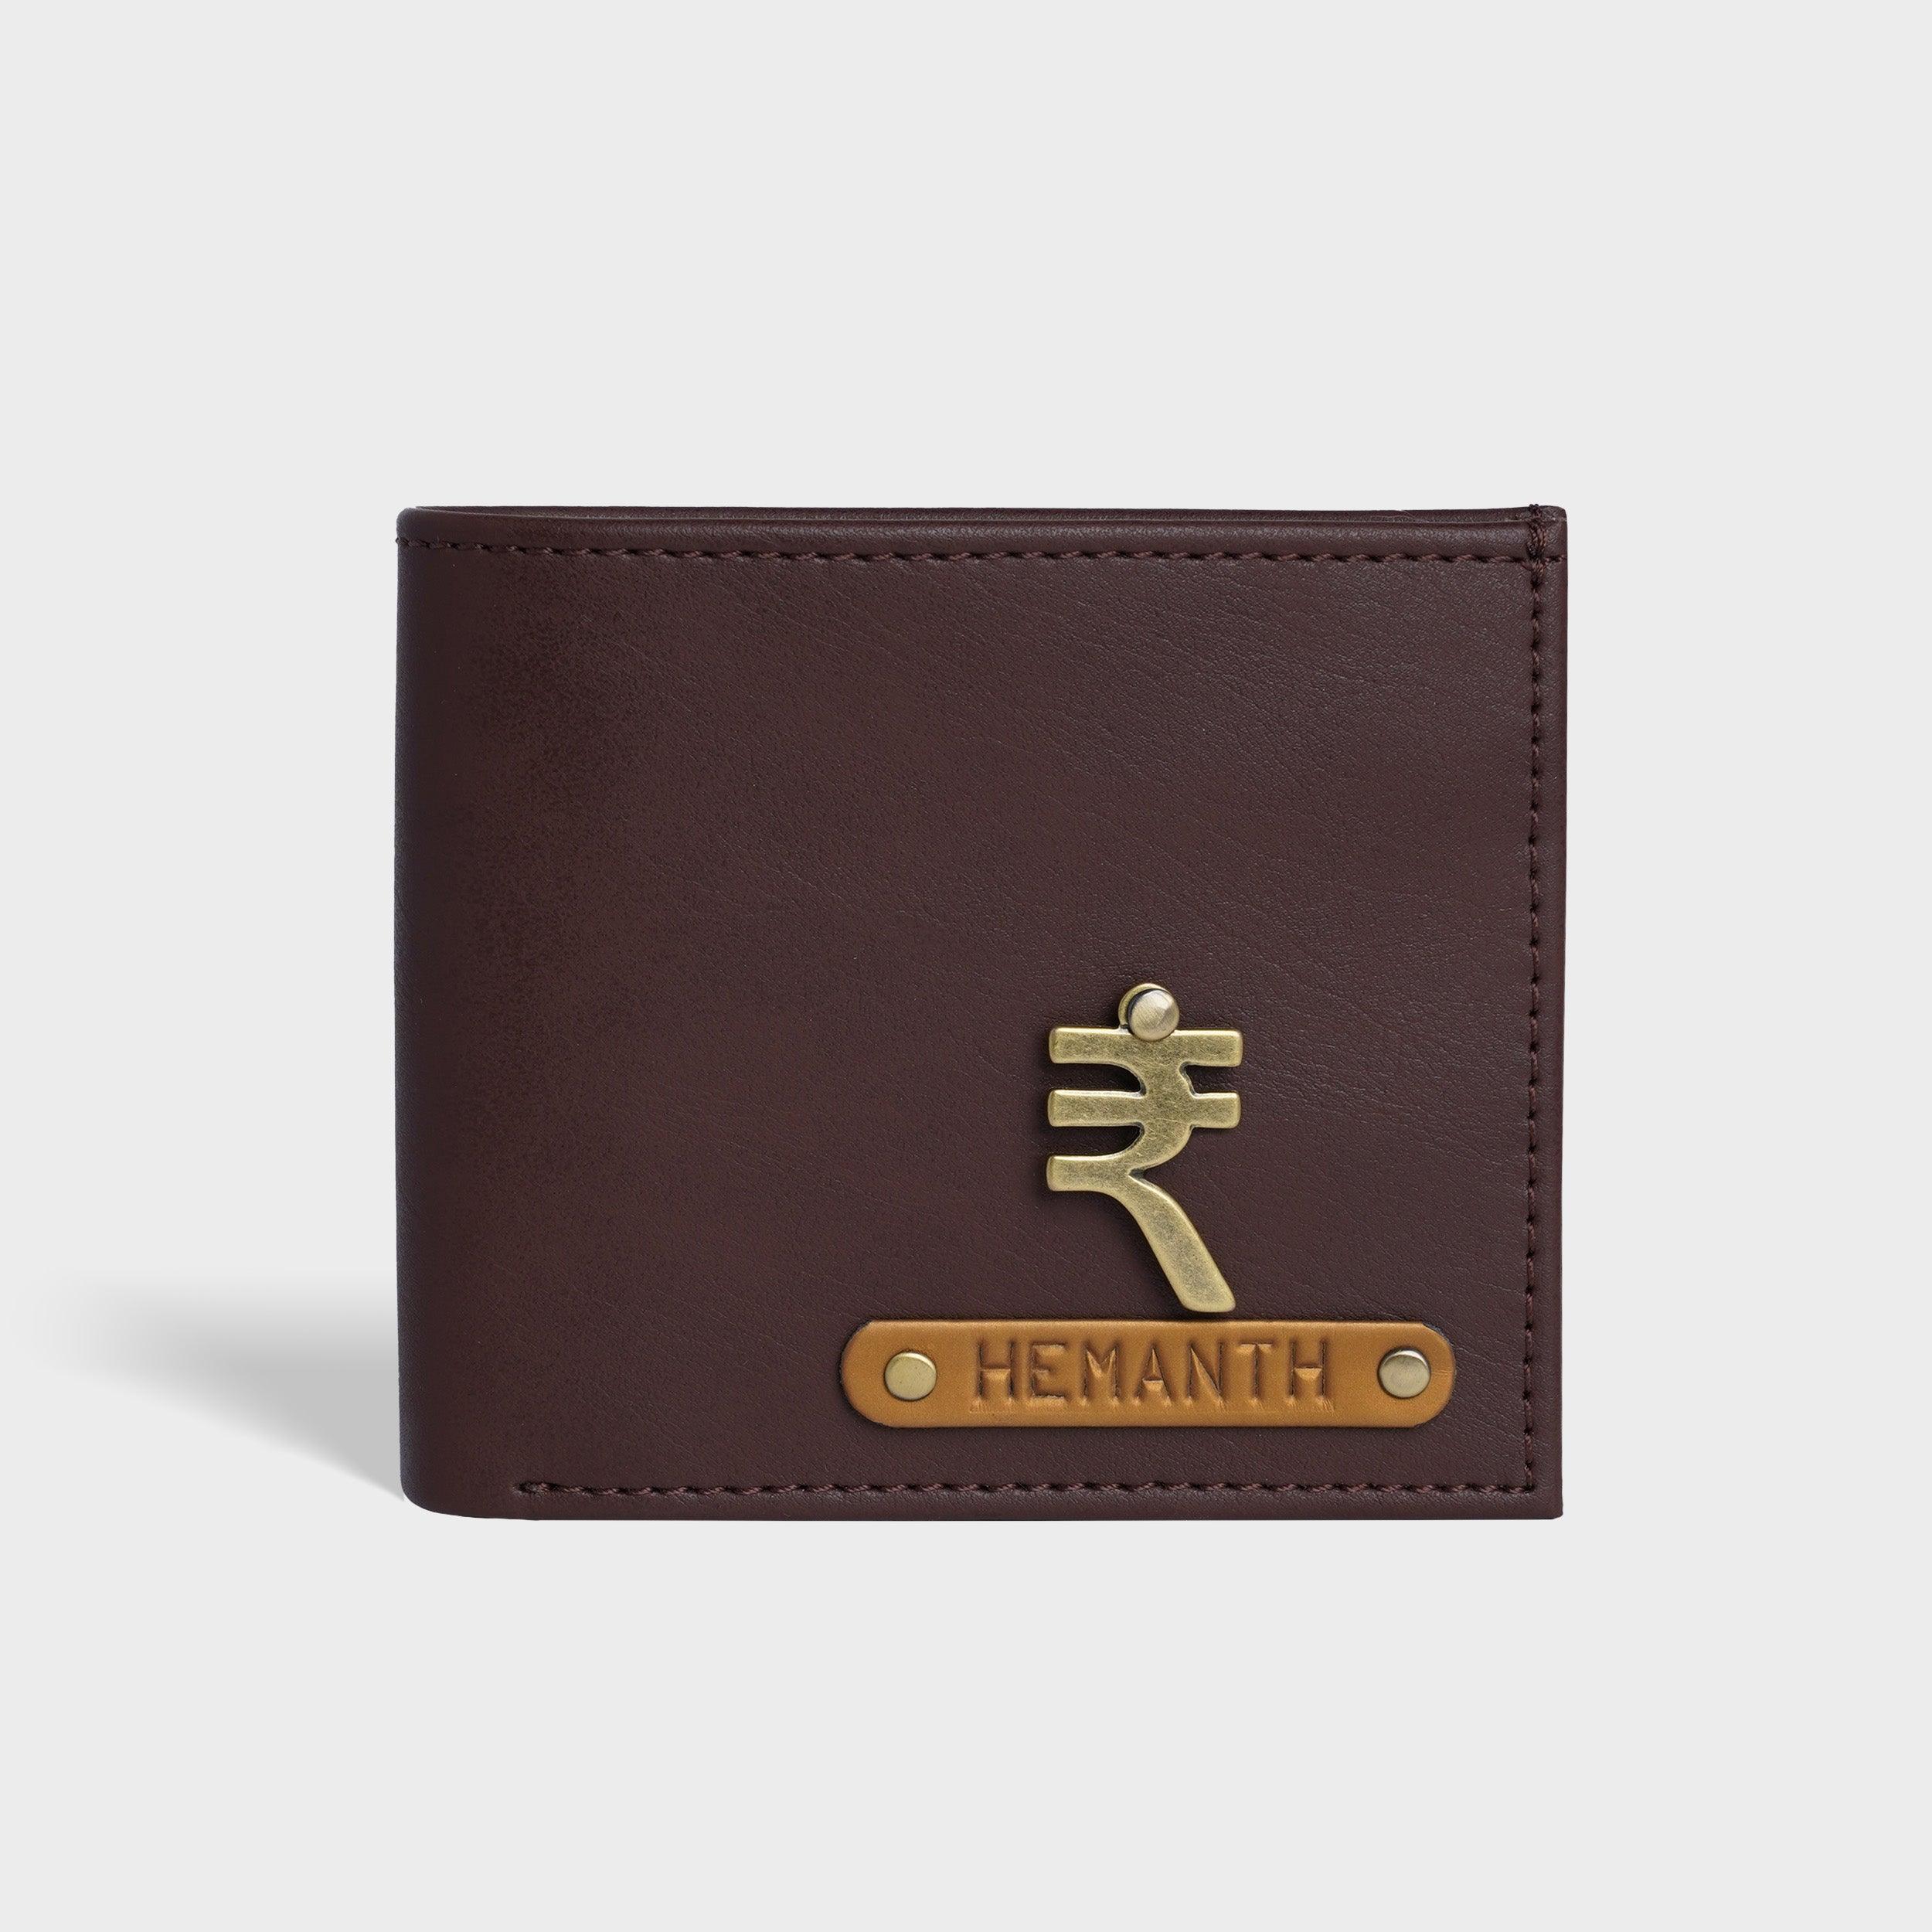 Executive Vegan Leather RFID Mens Wallet - Travelsleek